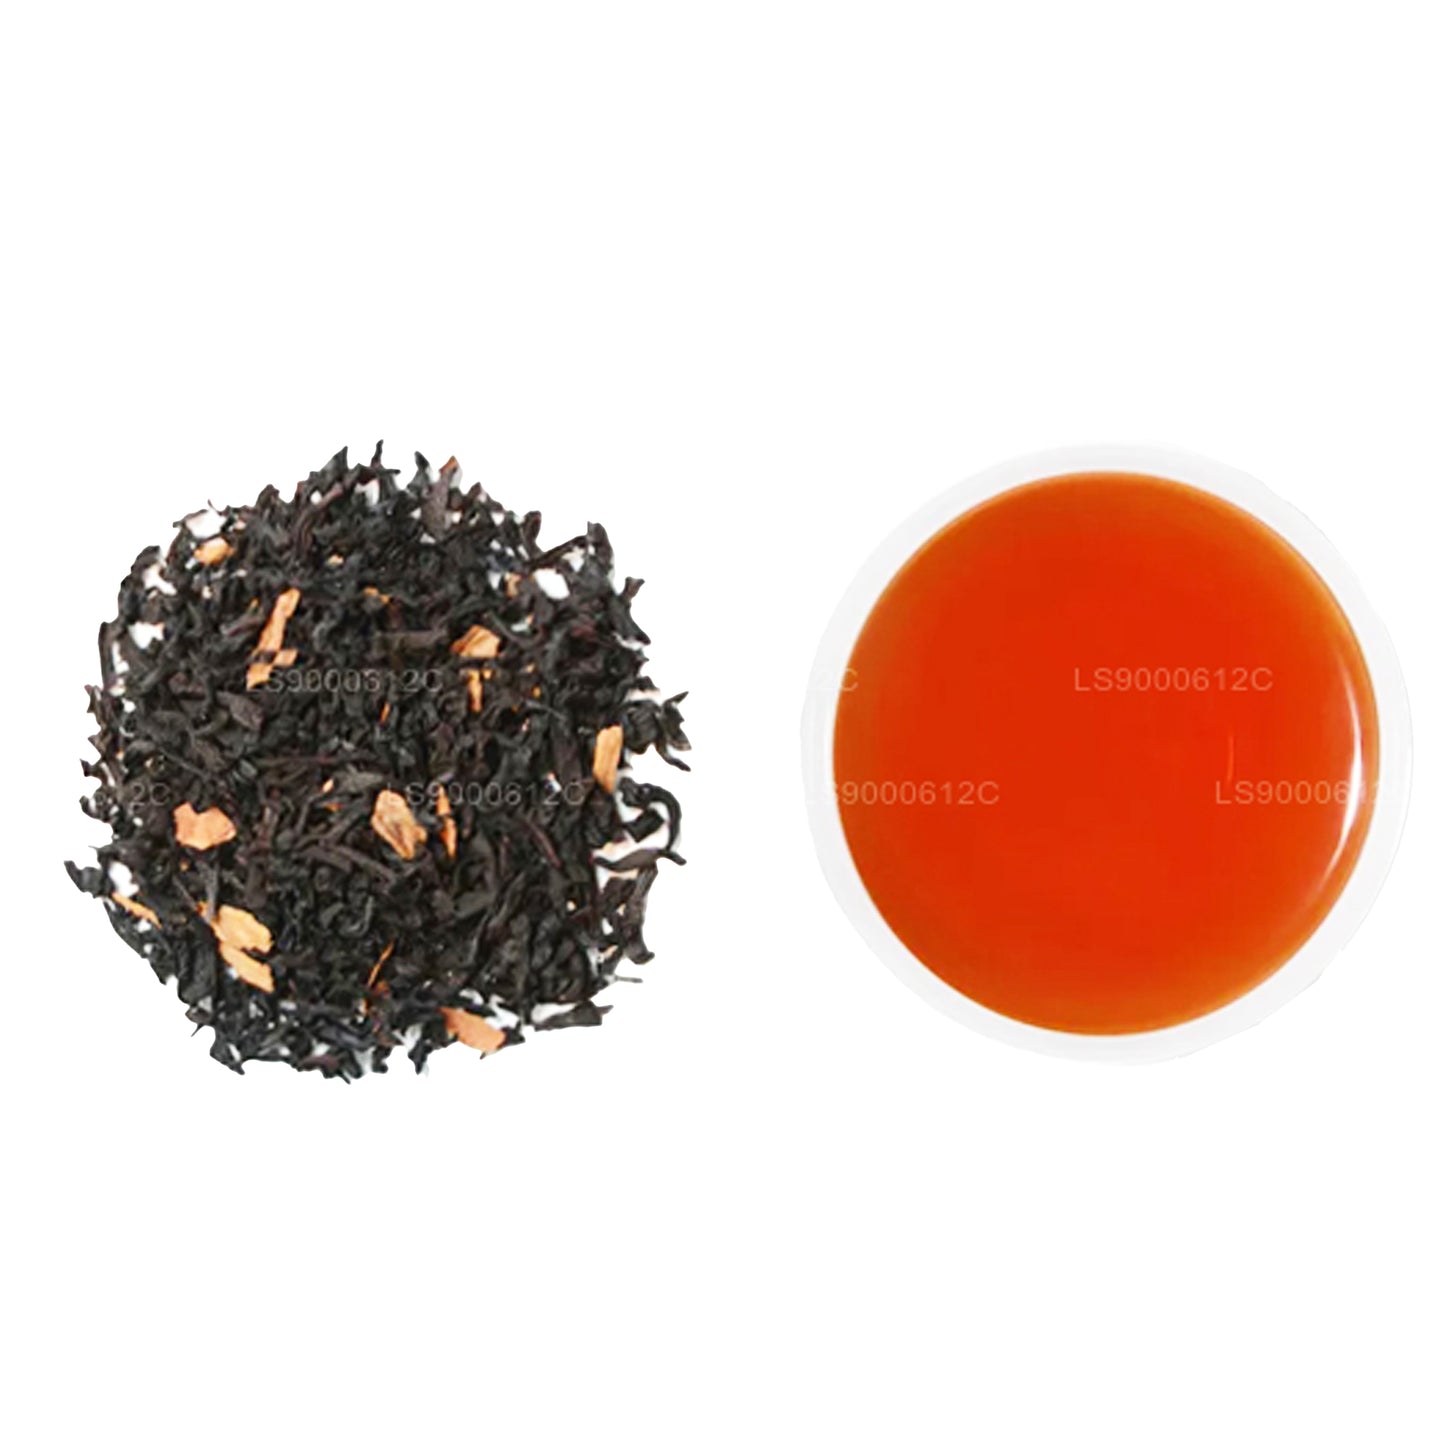 Jaf Çay Mevsimlik Tezahürat - Karamel, Vanilya ve Tarçın Aromalı Siyah Çay (50g)